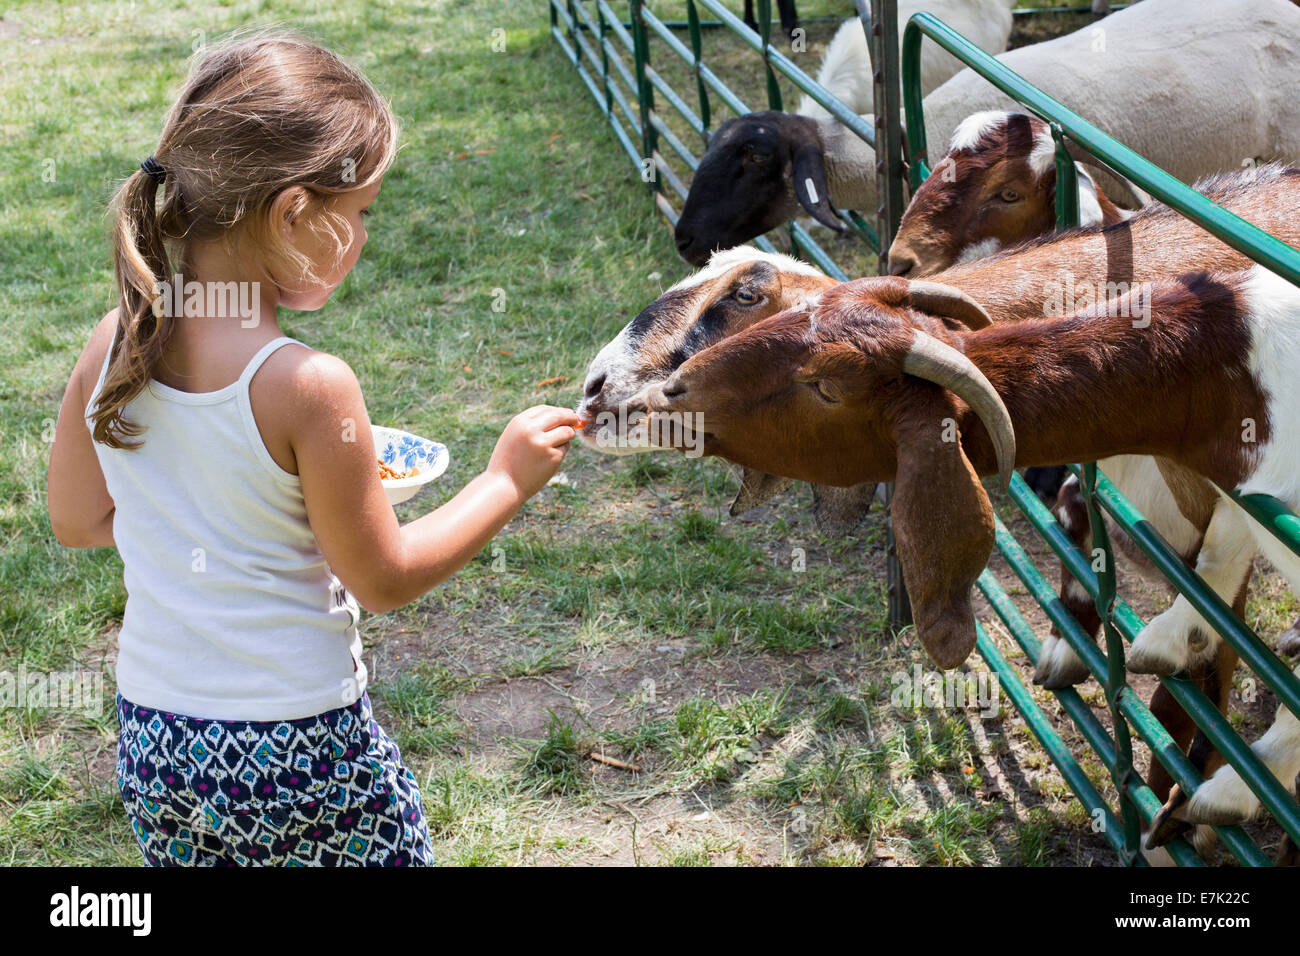 Sterling Heights, Michigan - Kinder-Feed auf dem Bauernhof Tiere im Streichelzoo bei einem Sommerfestival Stockfoto